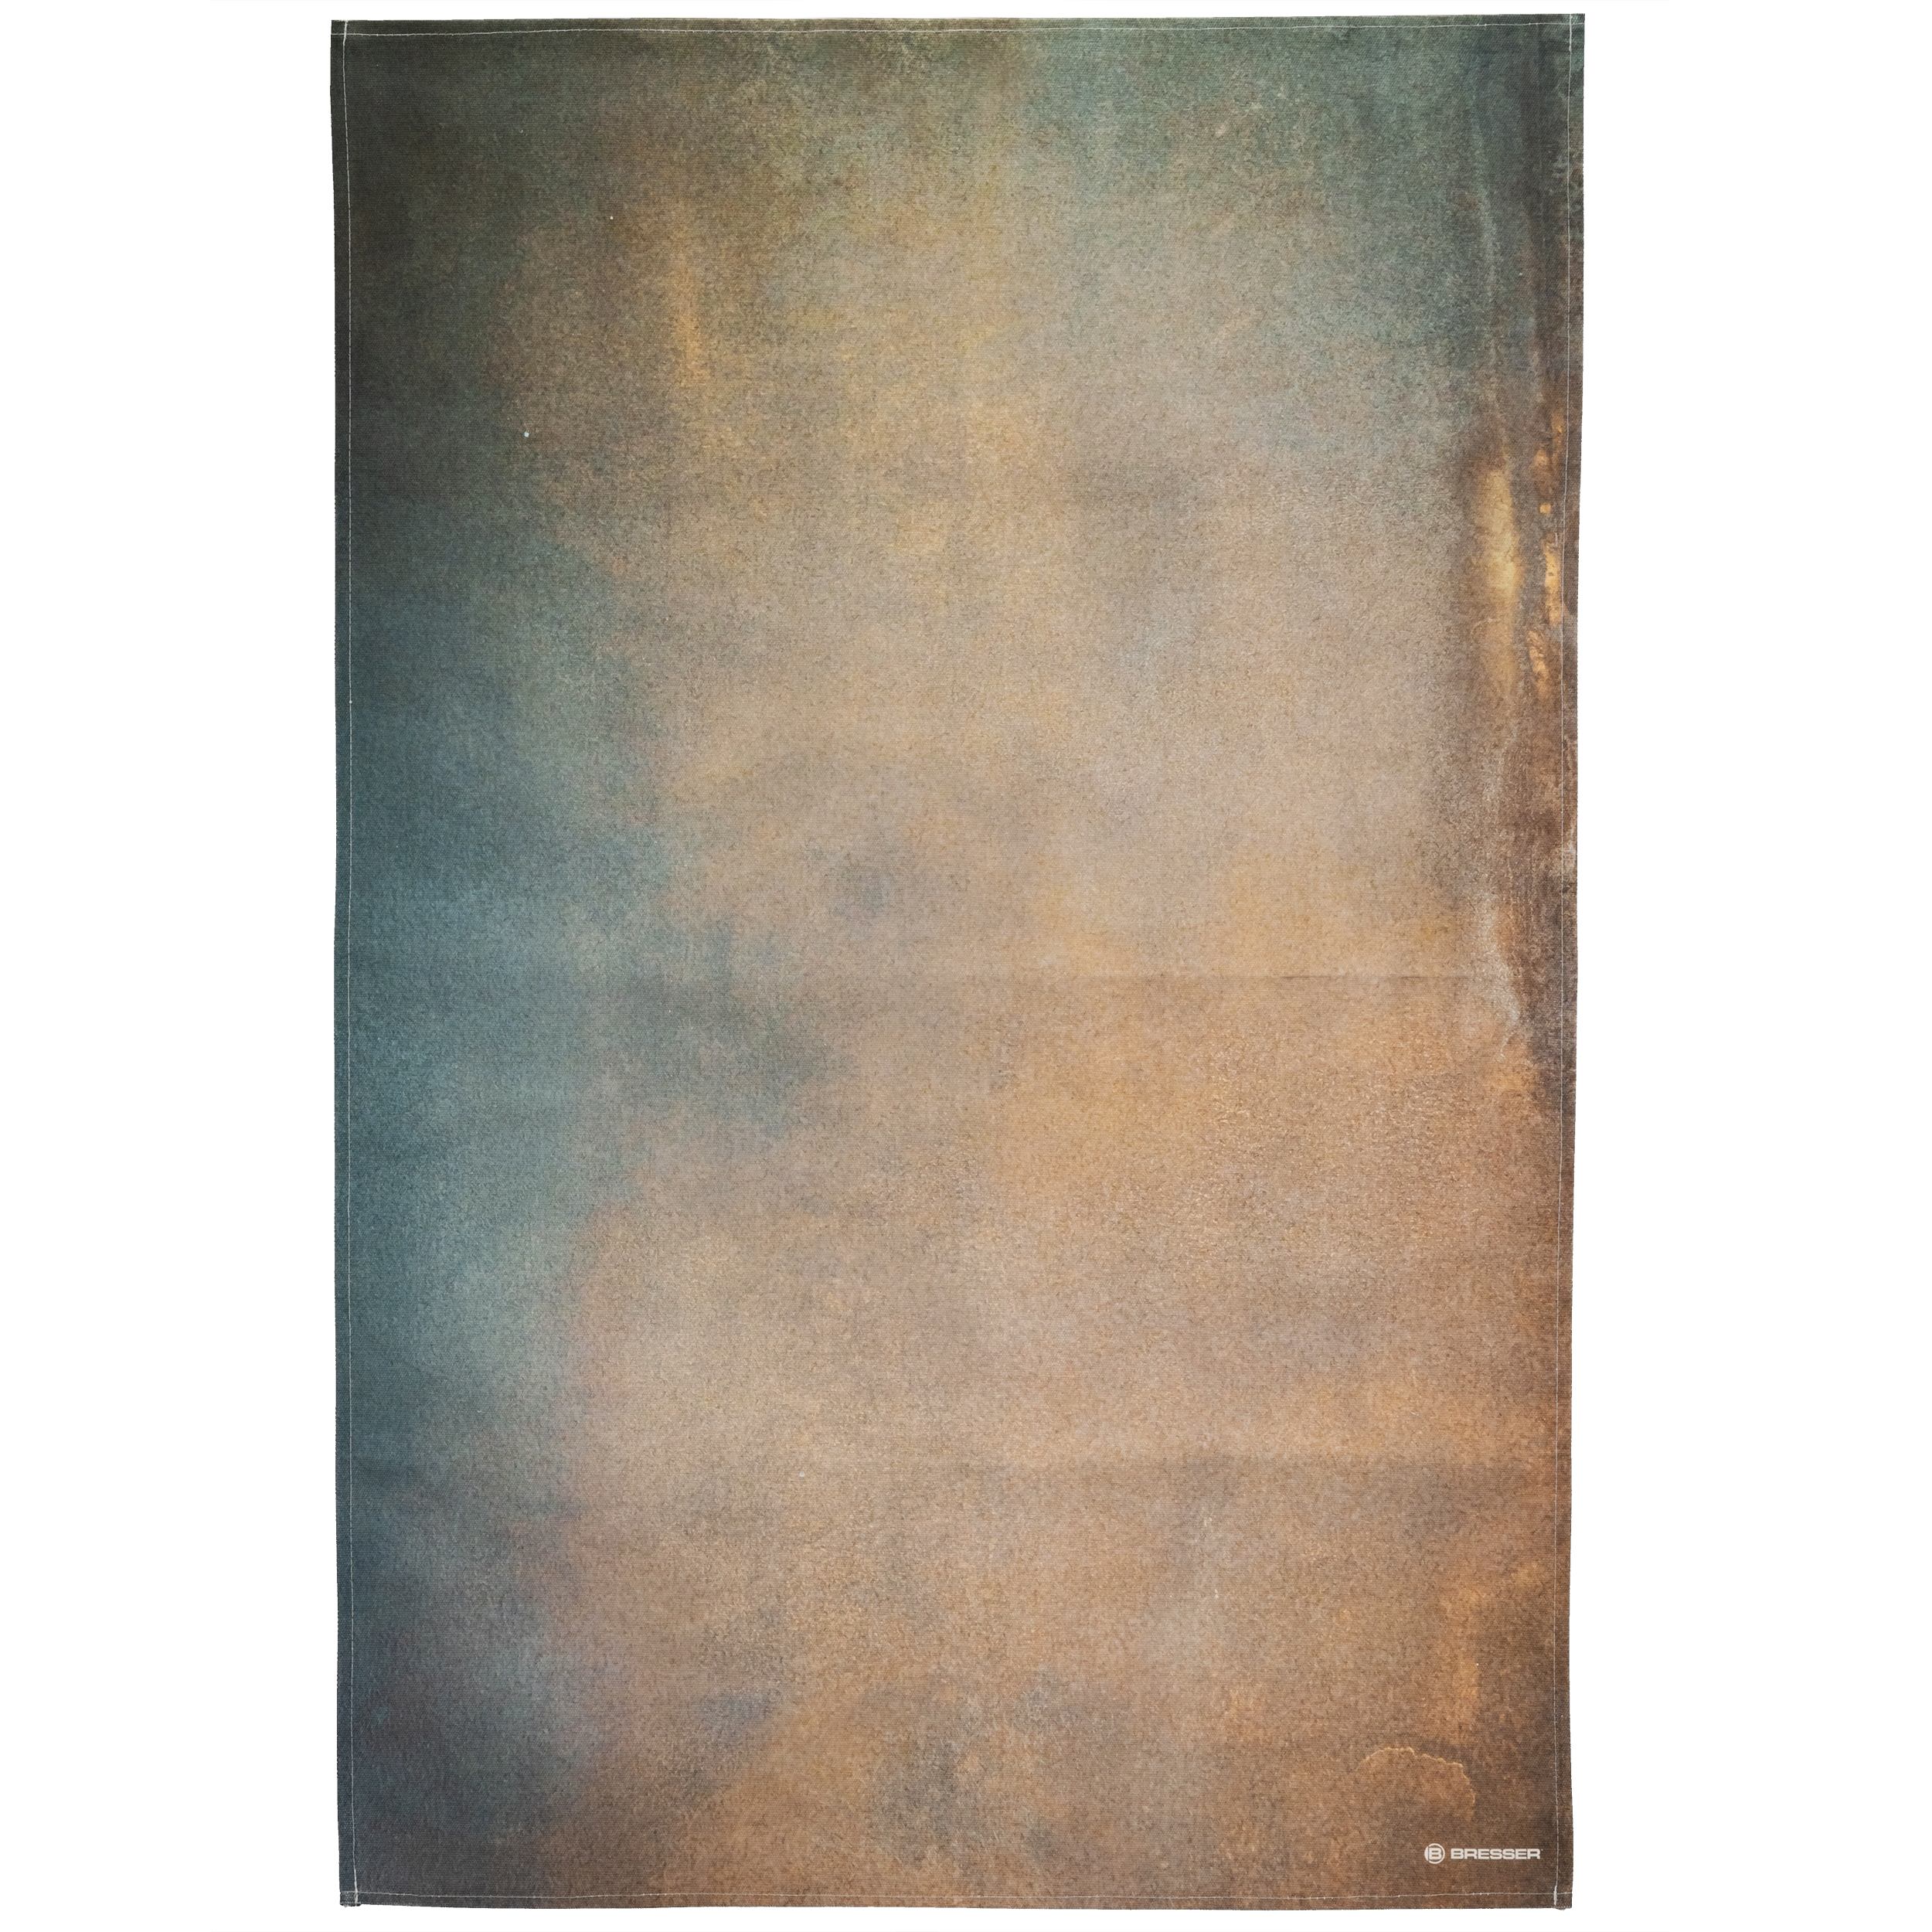 BRESSER Hintergrundstoff mit Fotomotiv 80 x 120 cm - Abstract Brown Blue